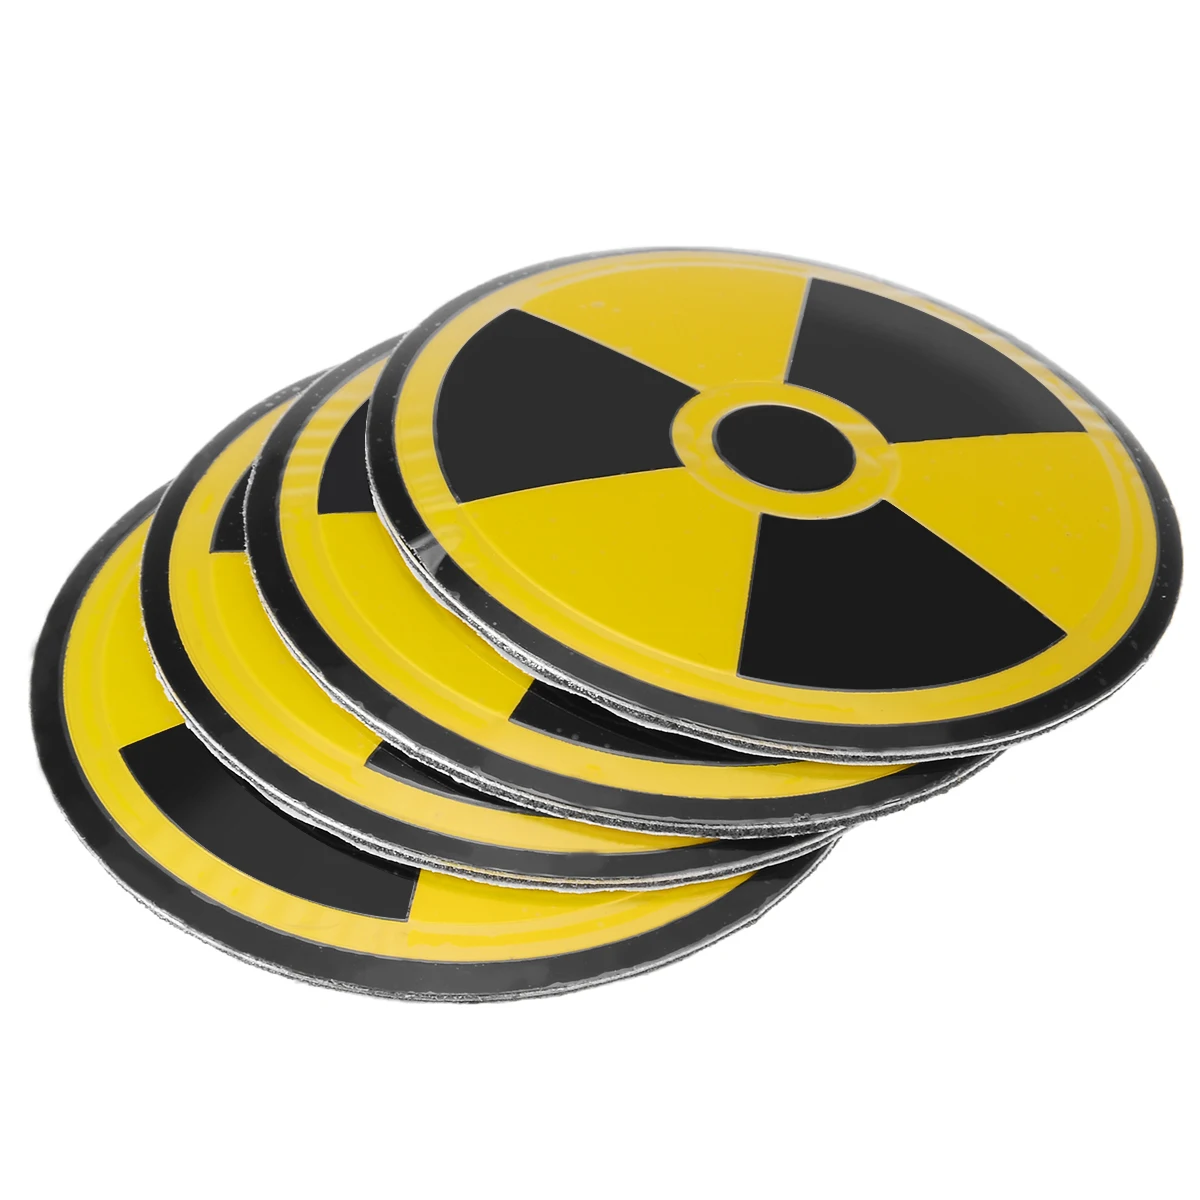 Mayitr, 4 шт., ядерный Предупреждение ющий символ, Центральная крышка колеса 5,5x5,5 см, желтый, черный, колпачок ступицы колеса, эмблема, значок, наклейки для стайлинга автомобилей